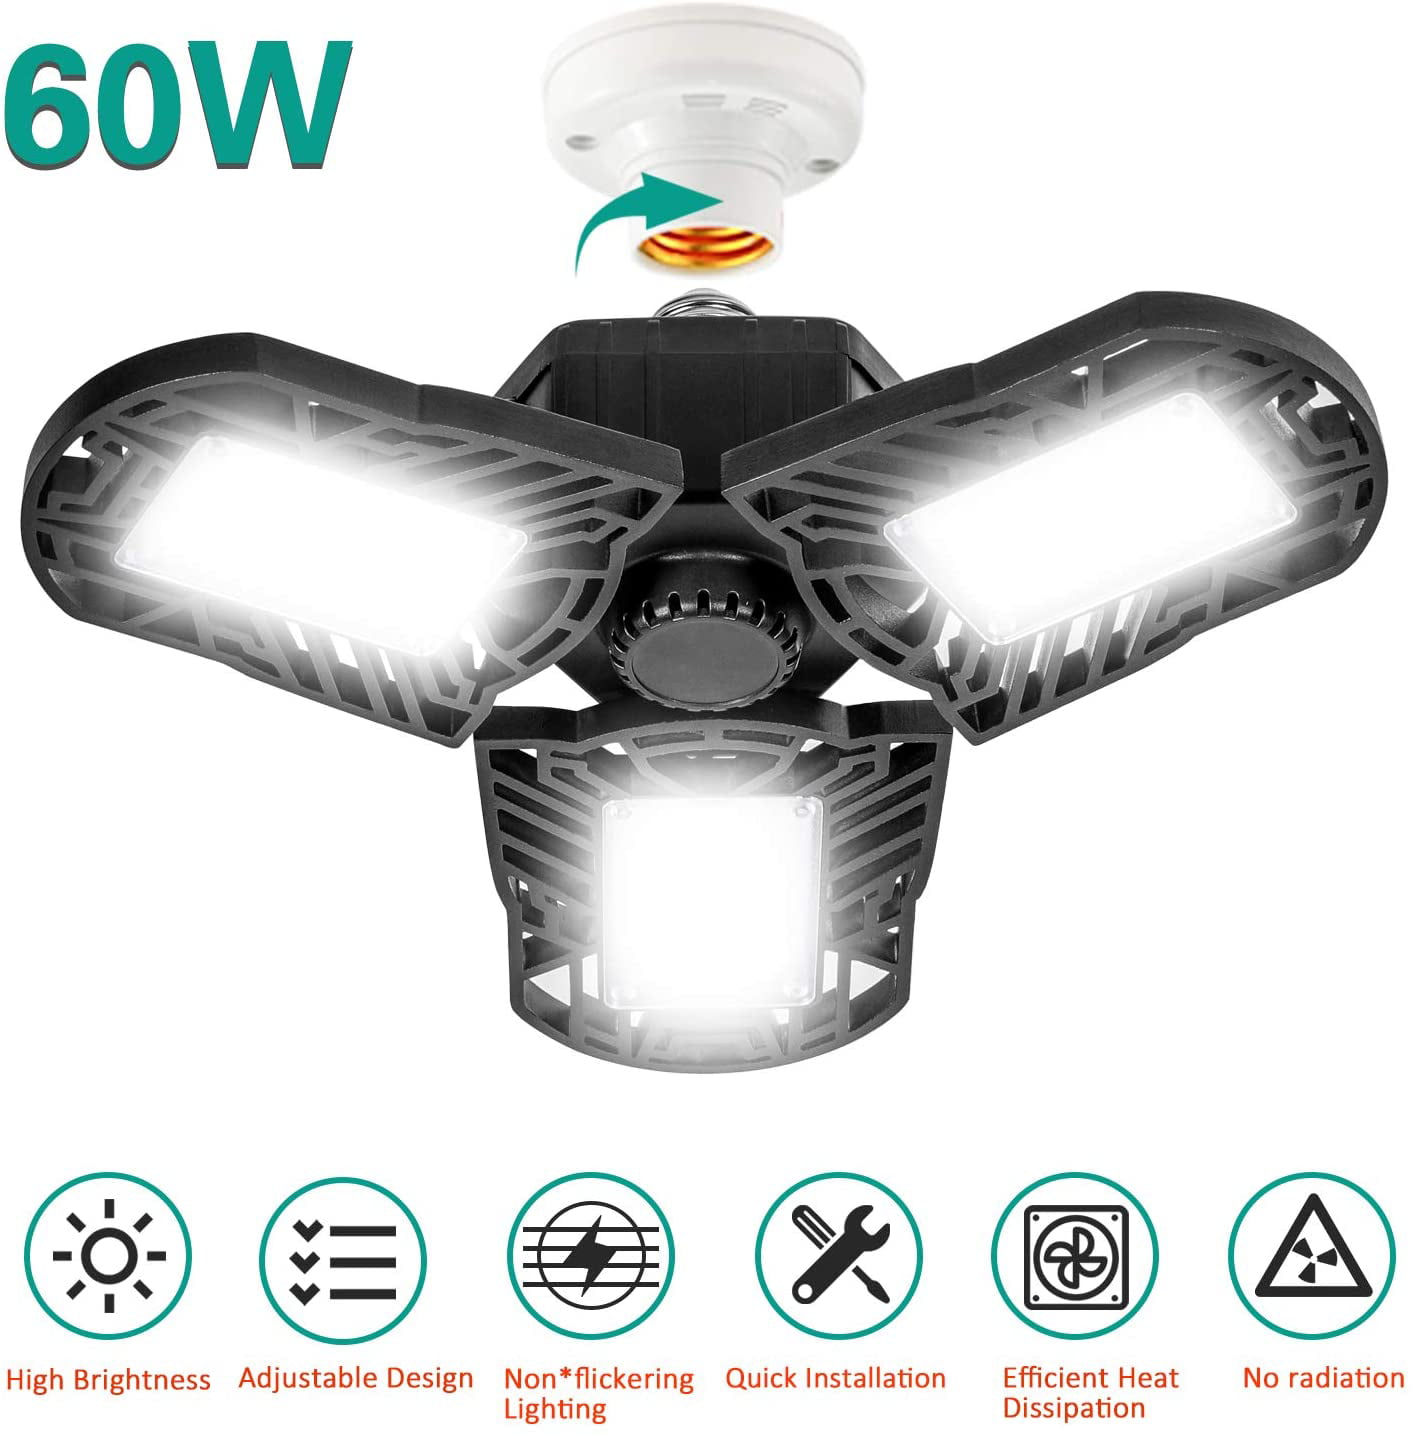 60W 126 LED Super Bright Folding Garage Work Light E27 Bulb Ceiling Lamp New 